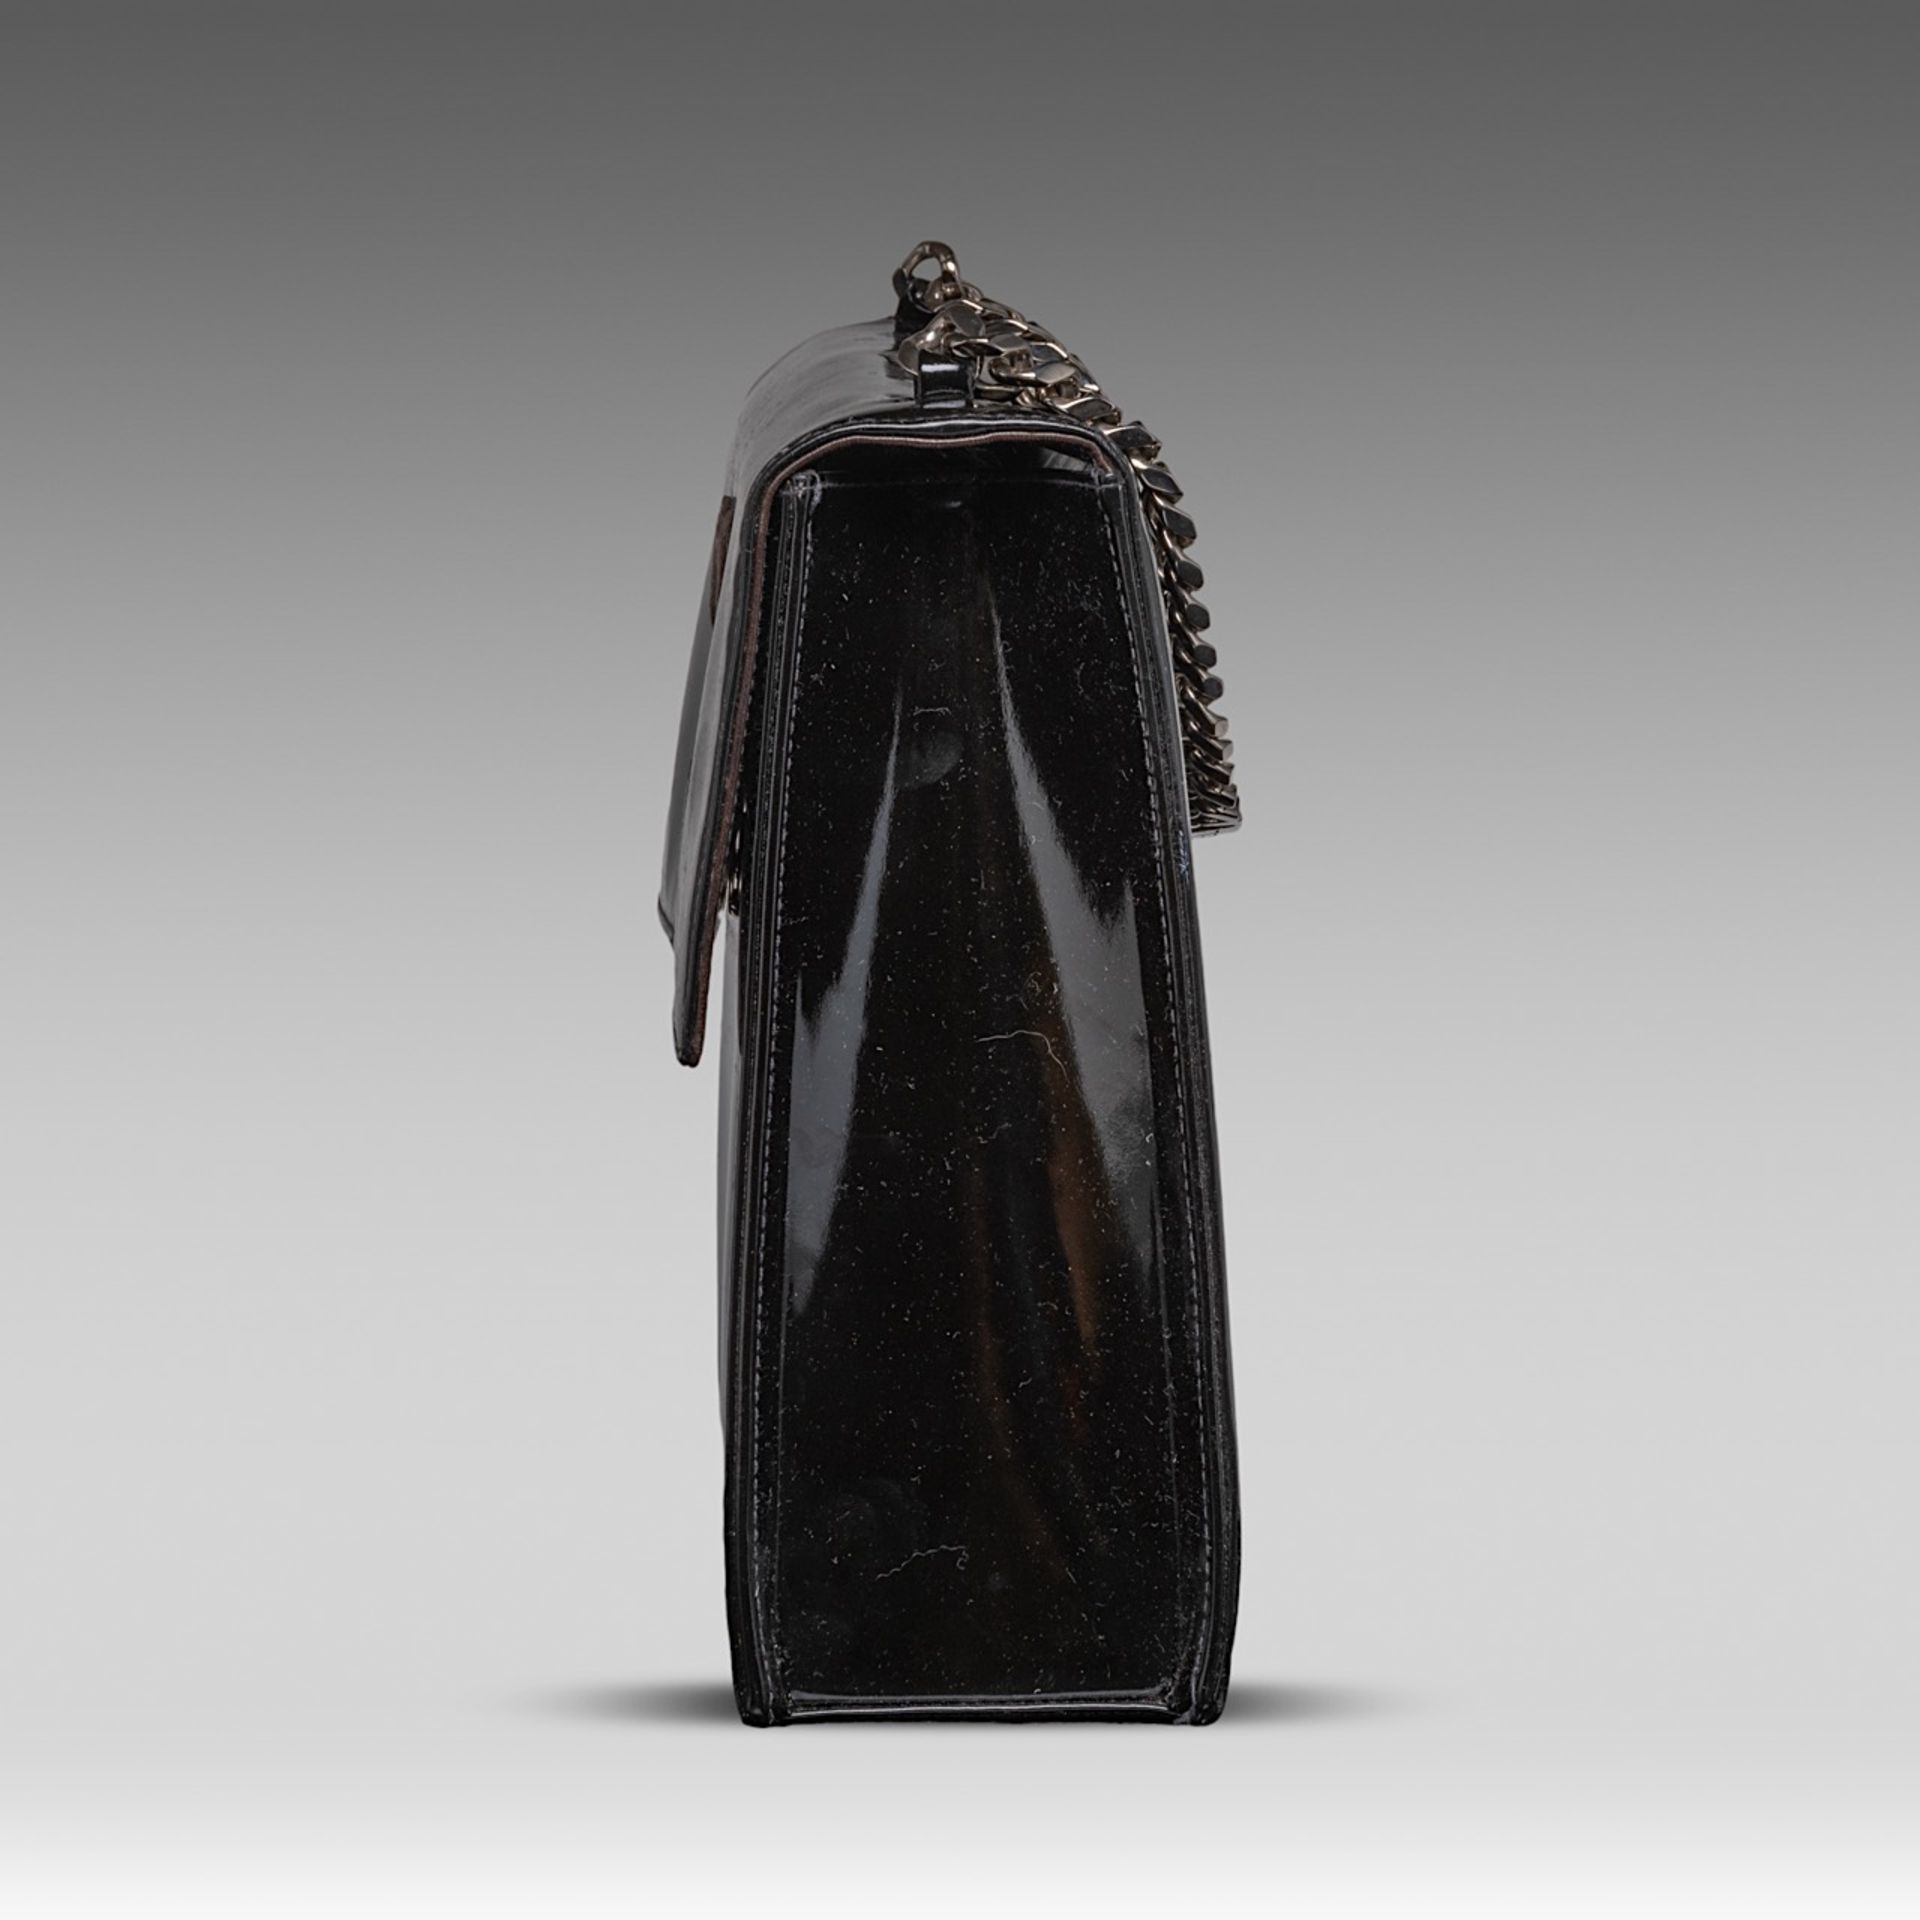 A Chanel flap handbag in black patent leather, H 22 - W 25 - D 8 cm - Bild 5 aus 10